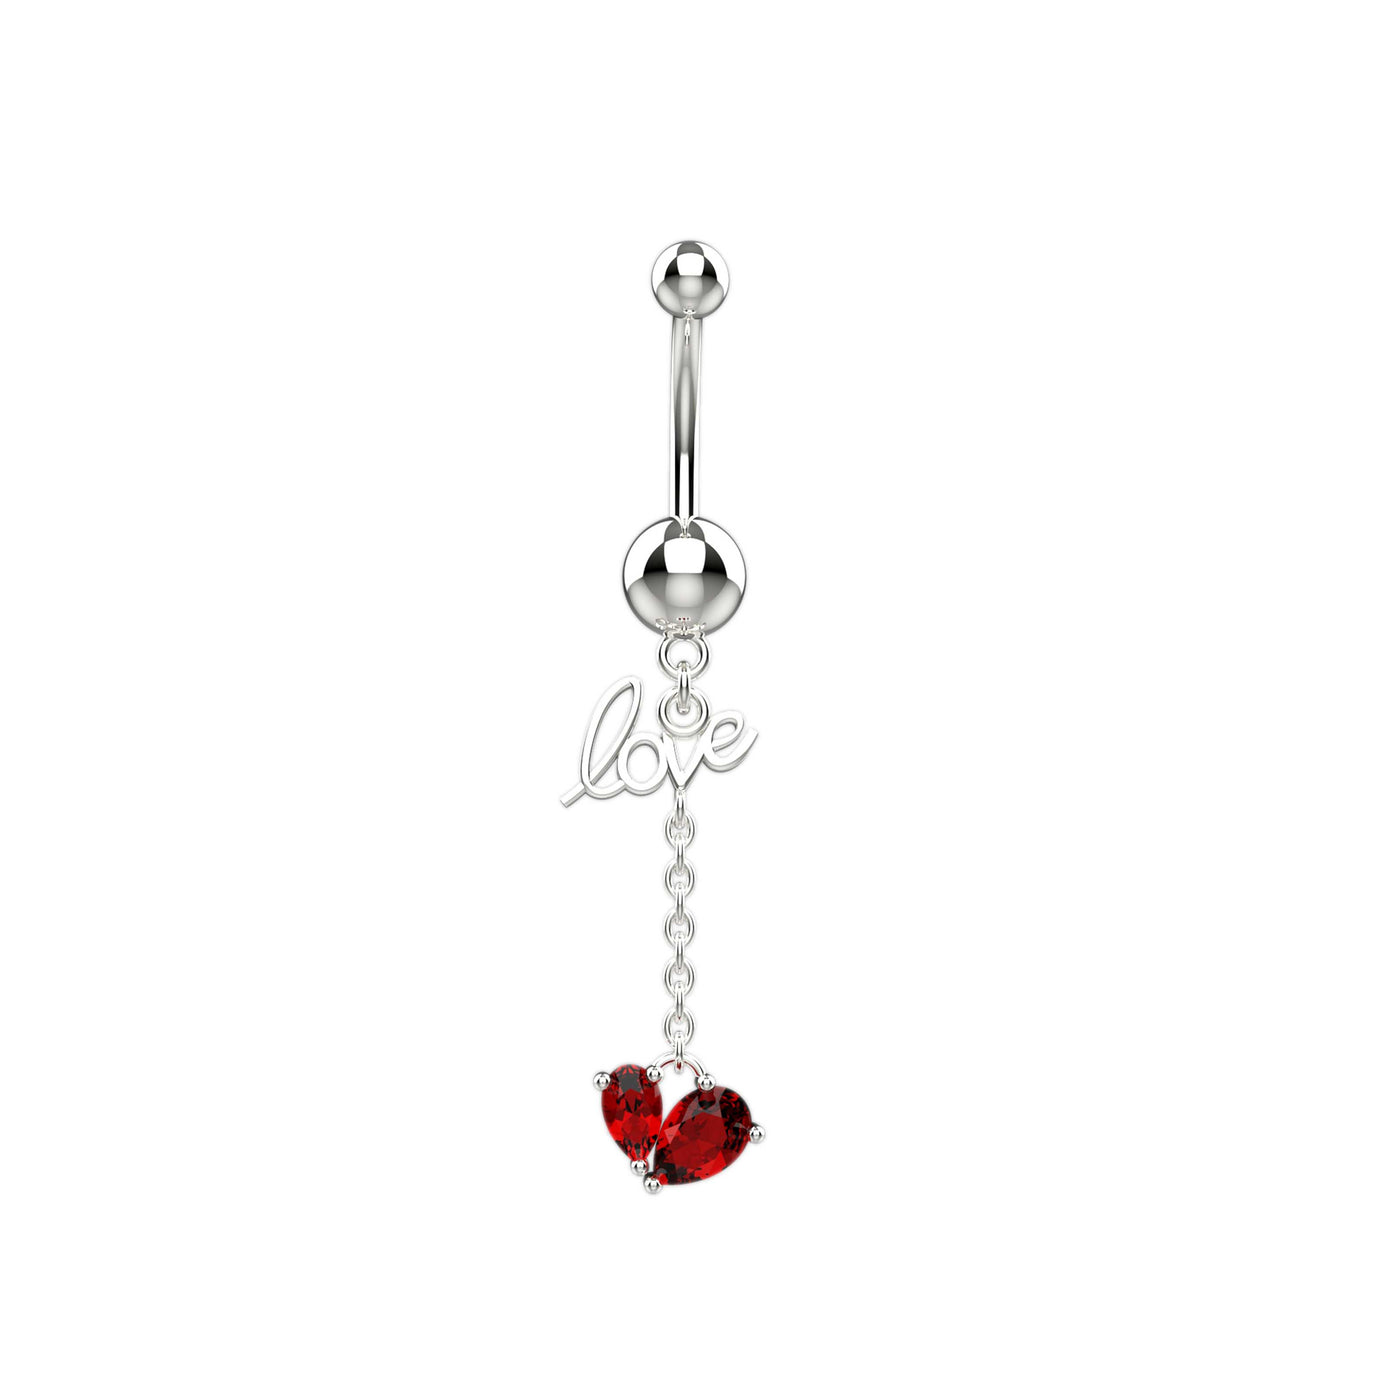 Love & Heart Shape Belly Button Piercing Jewelry